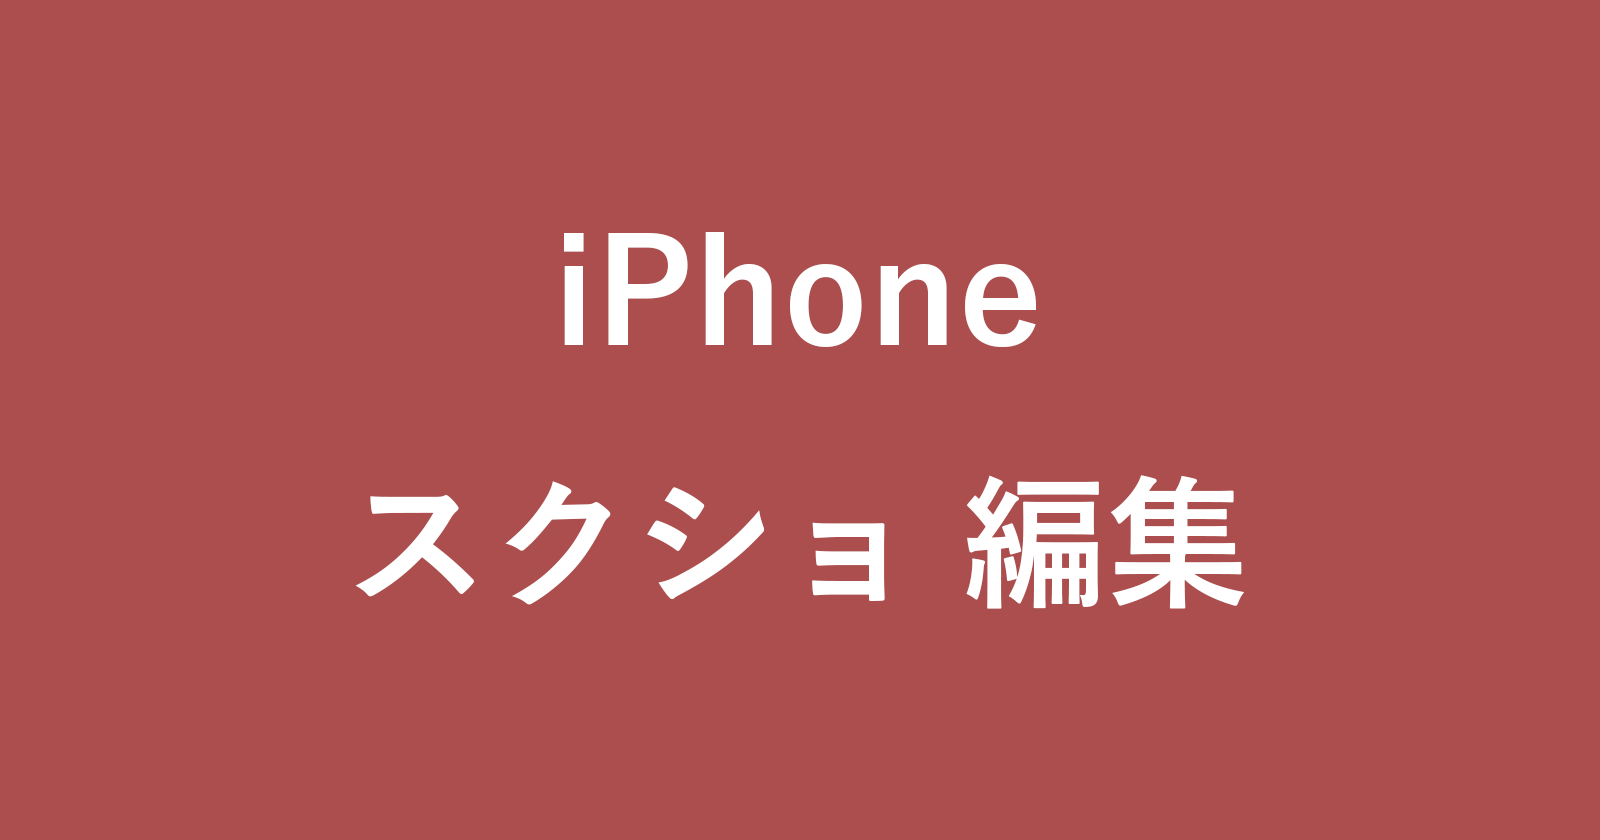 iphone edit screenshot